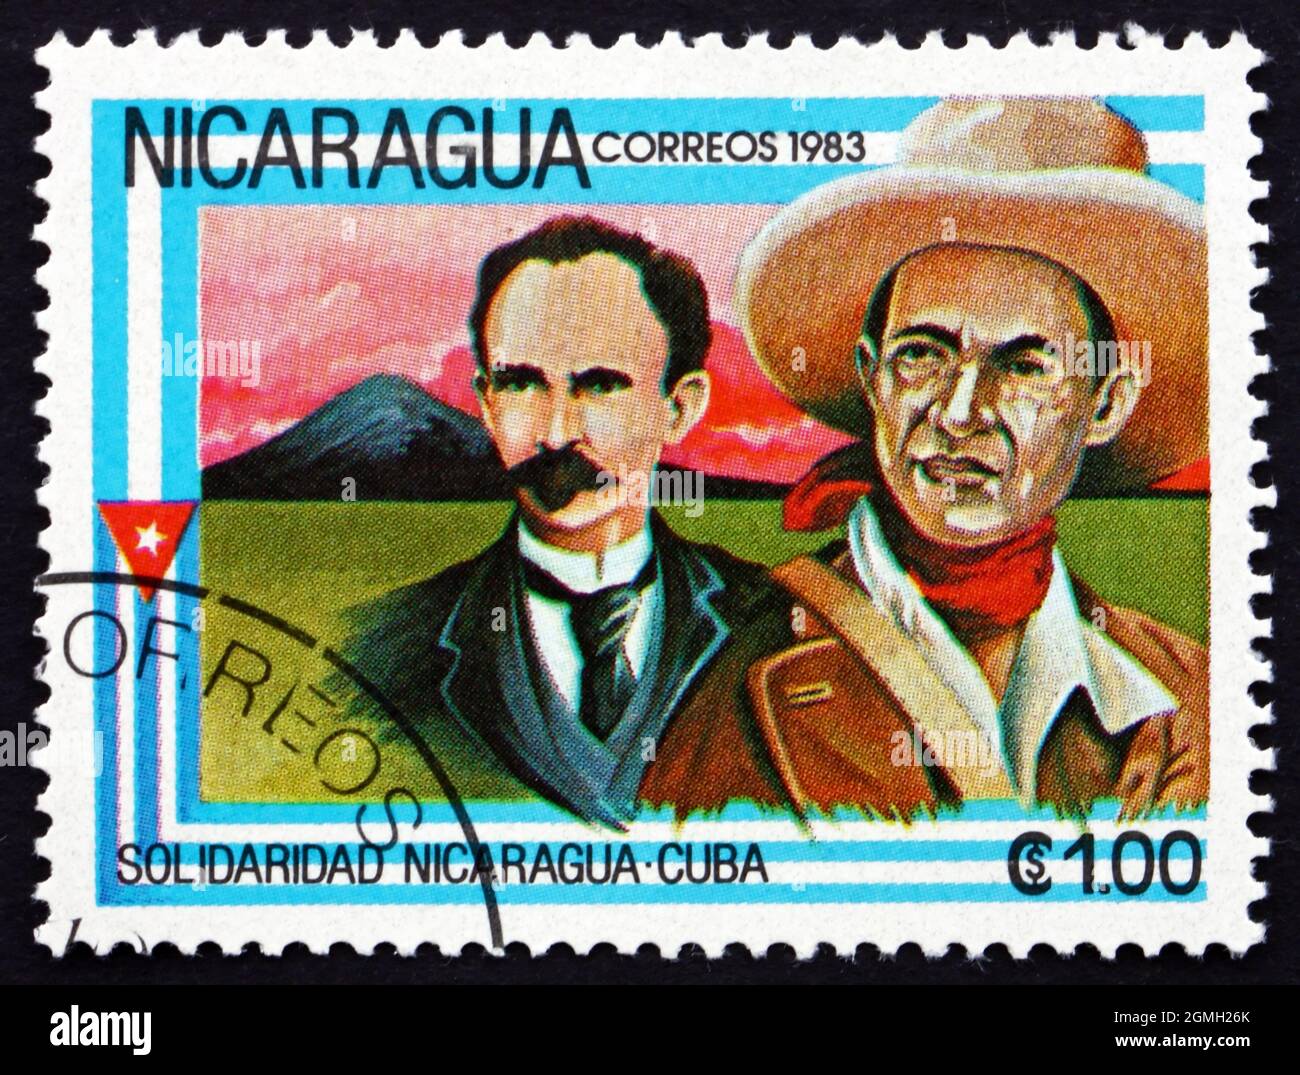 NICARAGUA - ALREDEDOR de 1983: Un sello impreso en Nicaragua muestra a José Martí y al General Sandino, Solidaridad Nicaragüense-Cubana, alrededor de 1983 Foto de stock